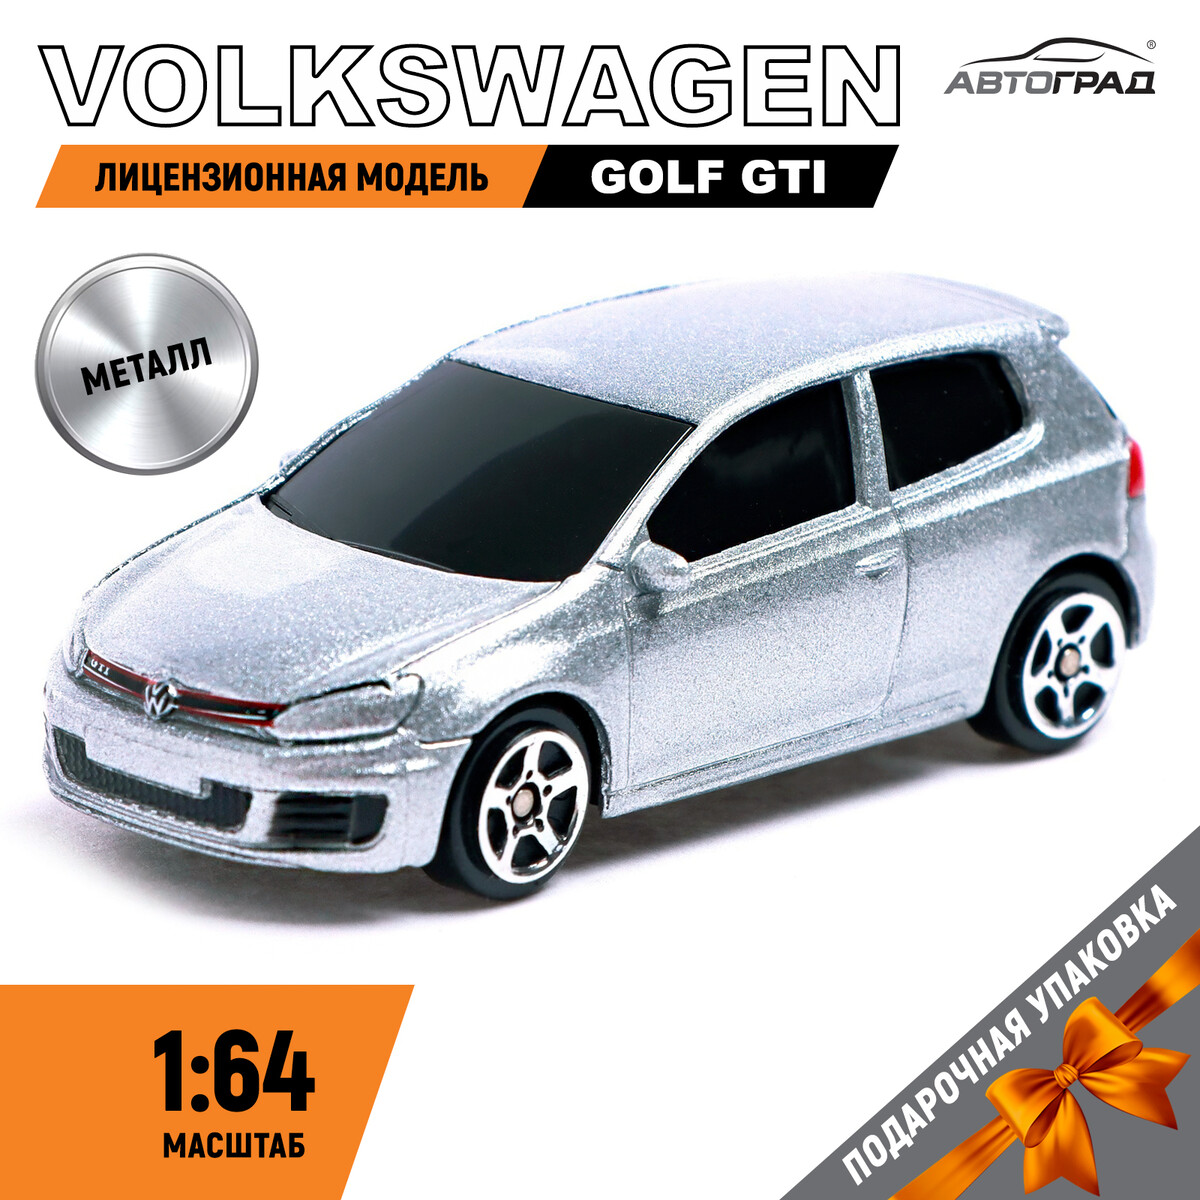 Машина металлическая volkswagen golf gti, 1:64, цвет серебро машина металлическая автоград volkswagen golf gti 1 43 серебро 7152977